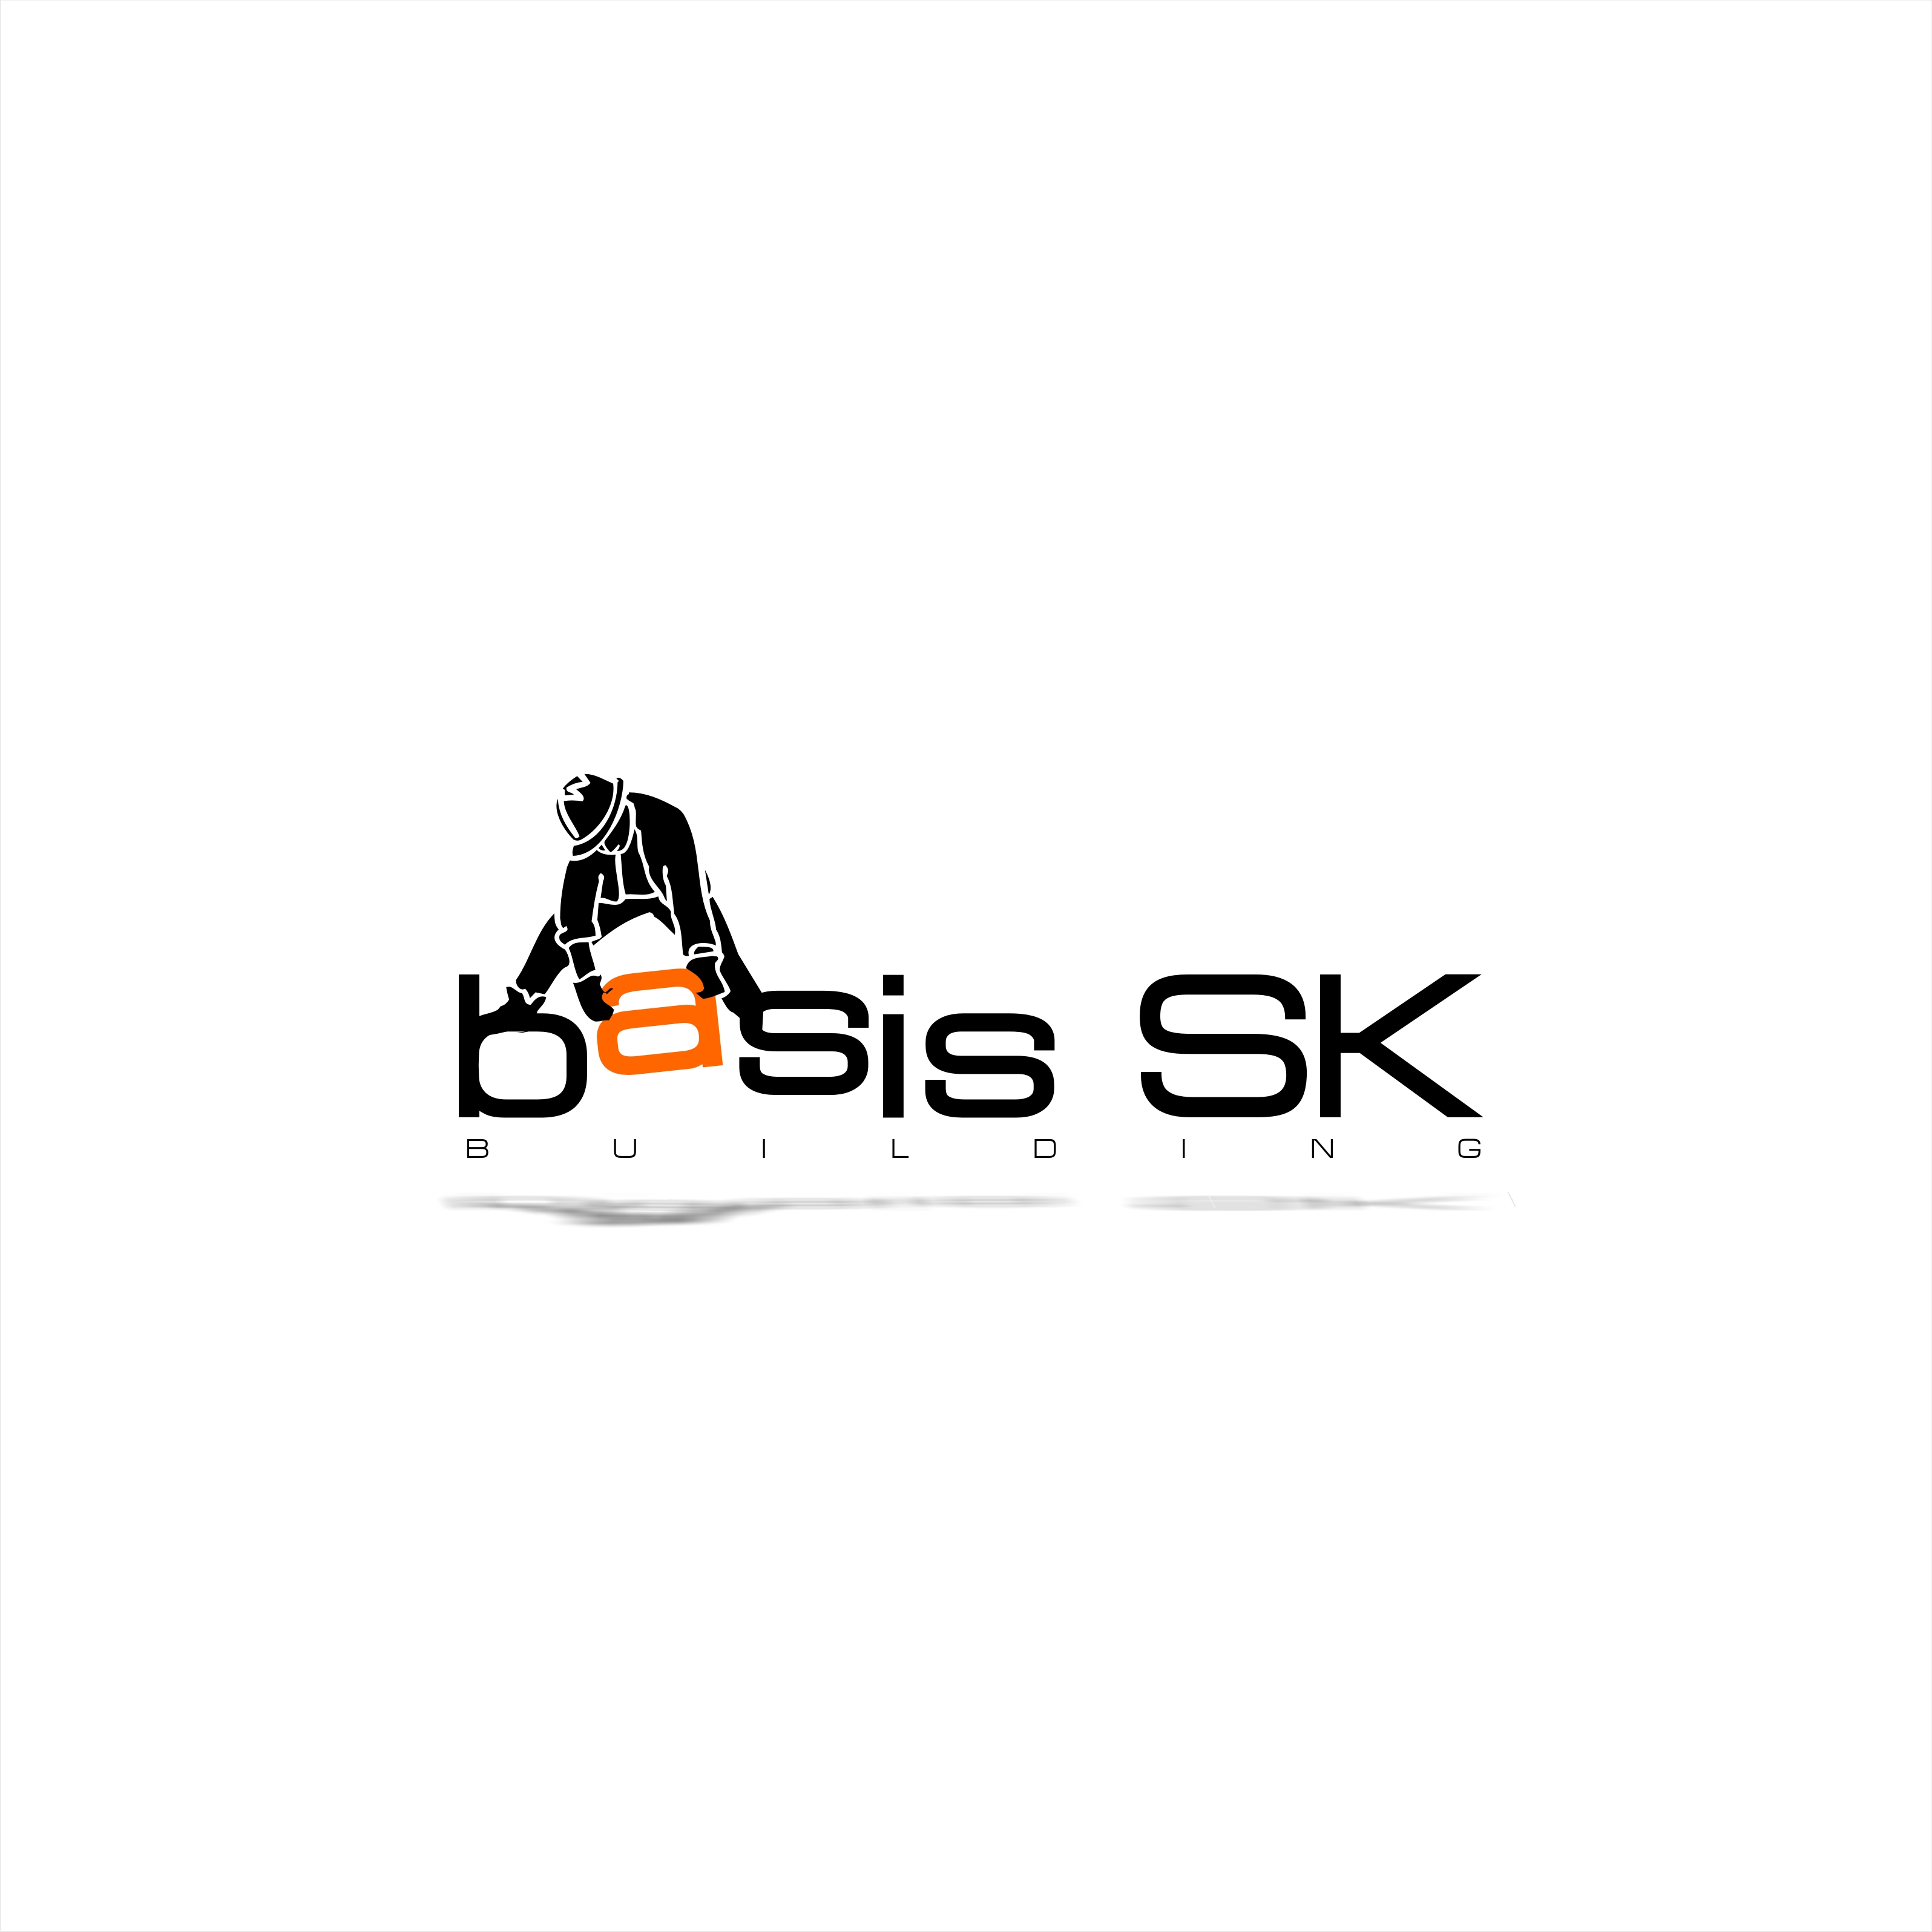 basis sk_p.2